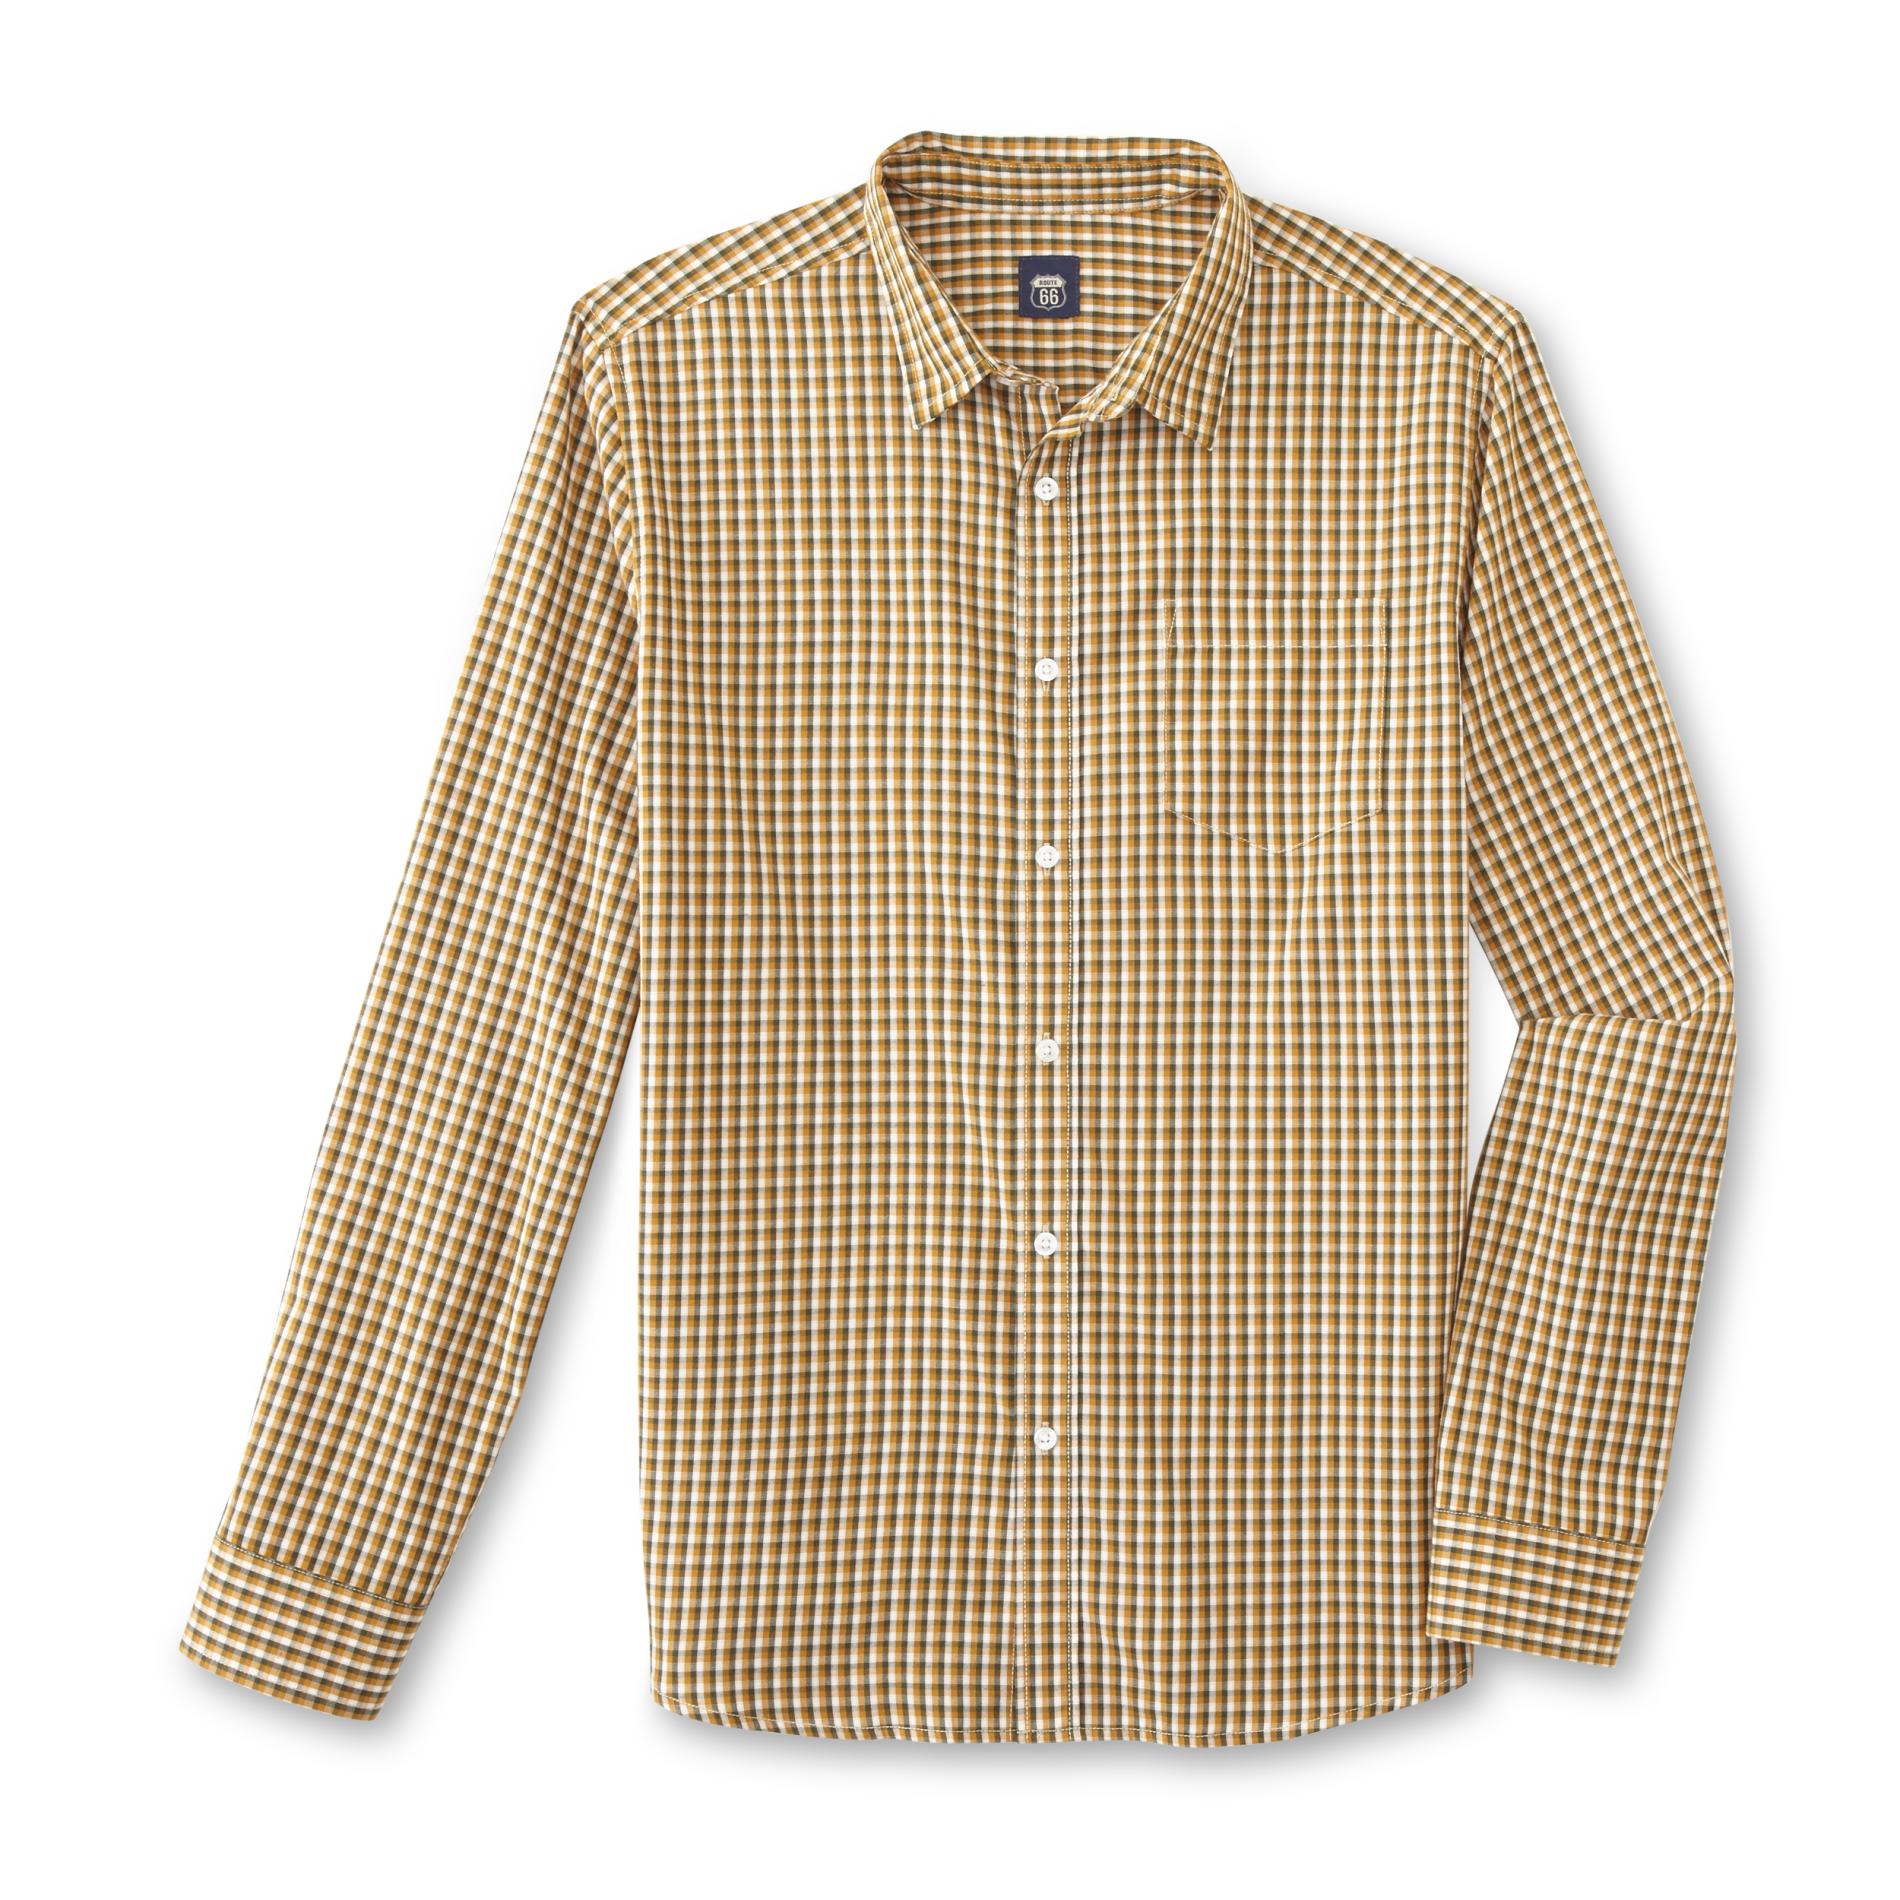 Route 66 Men's Button-Front Shirt - Plaid